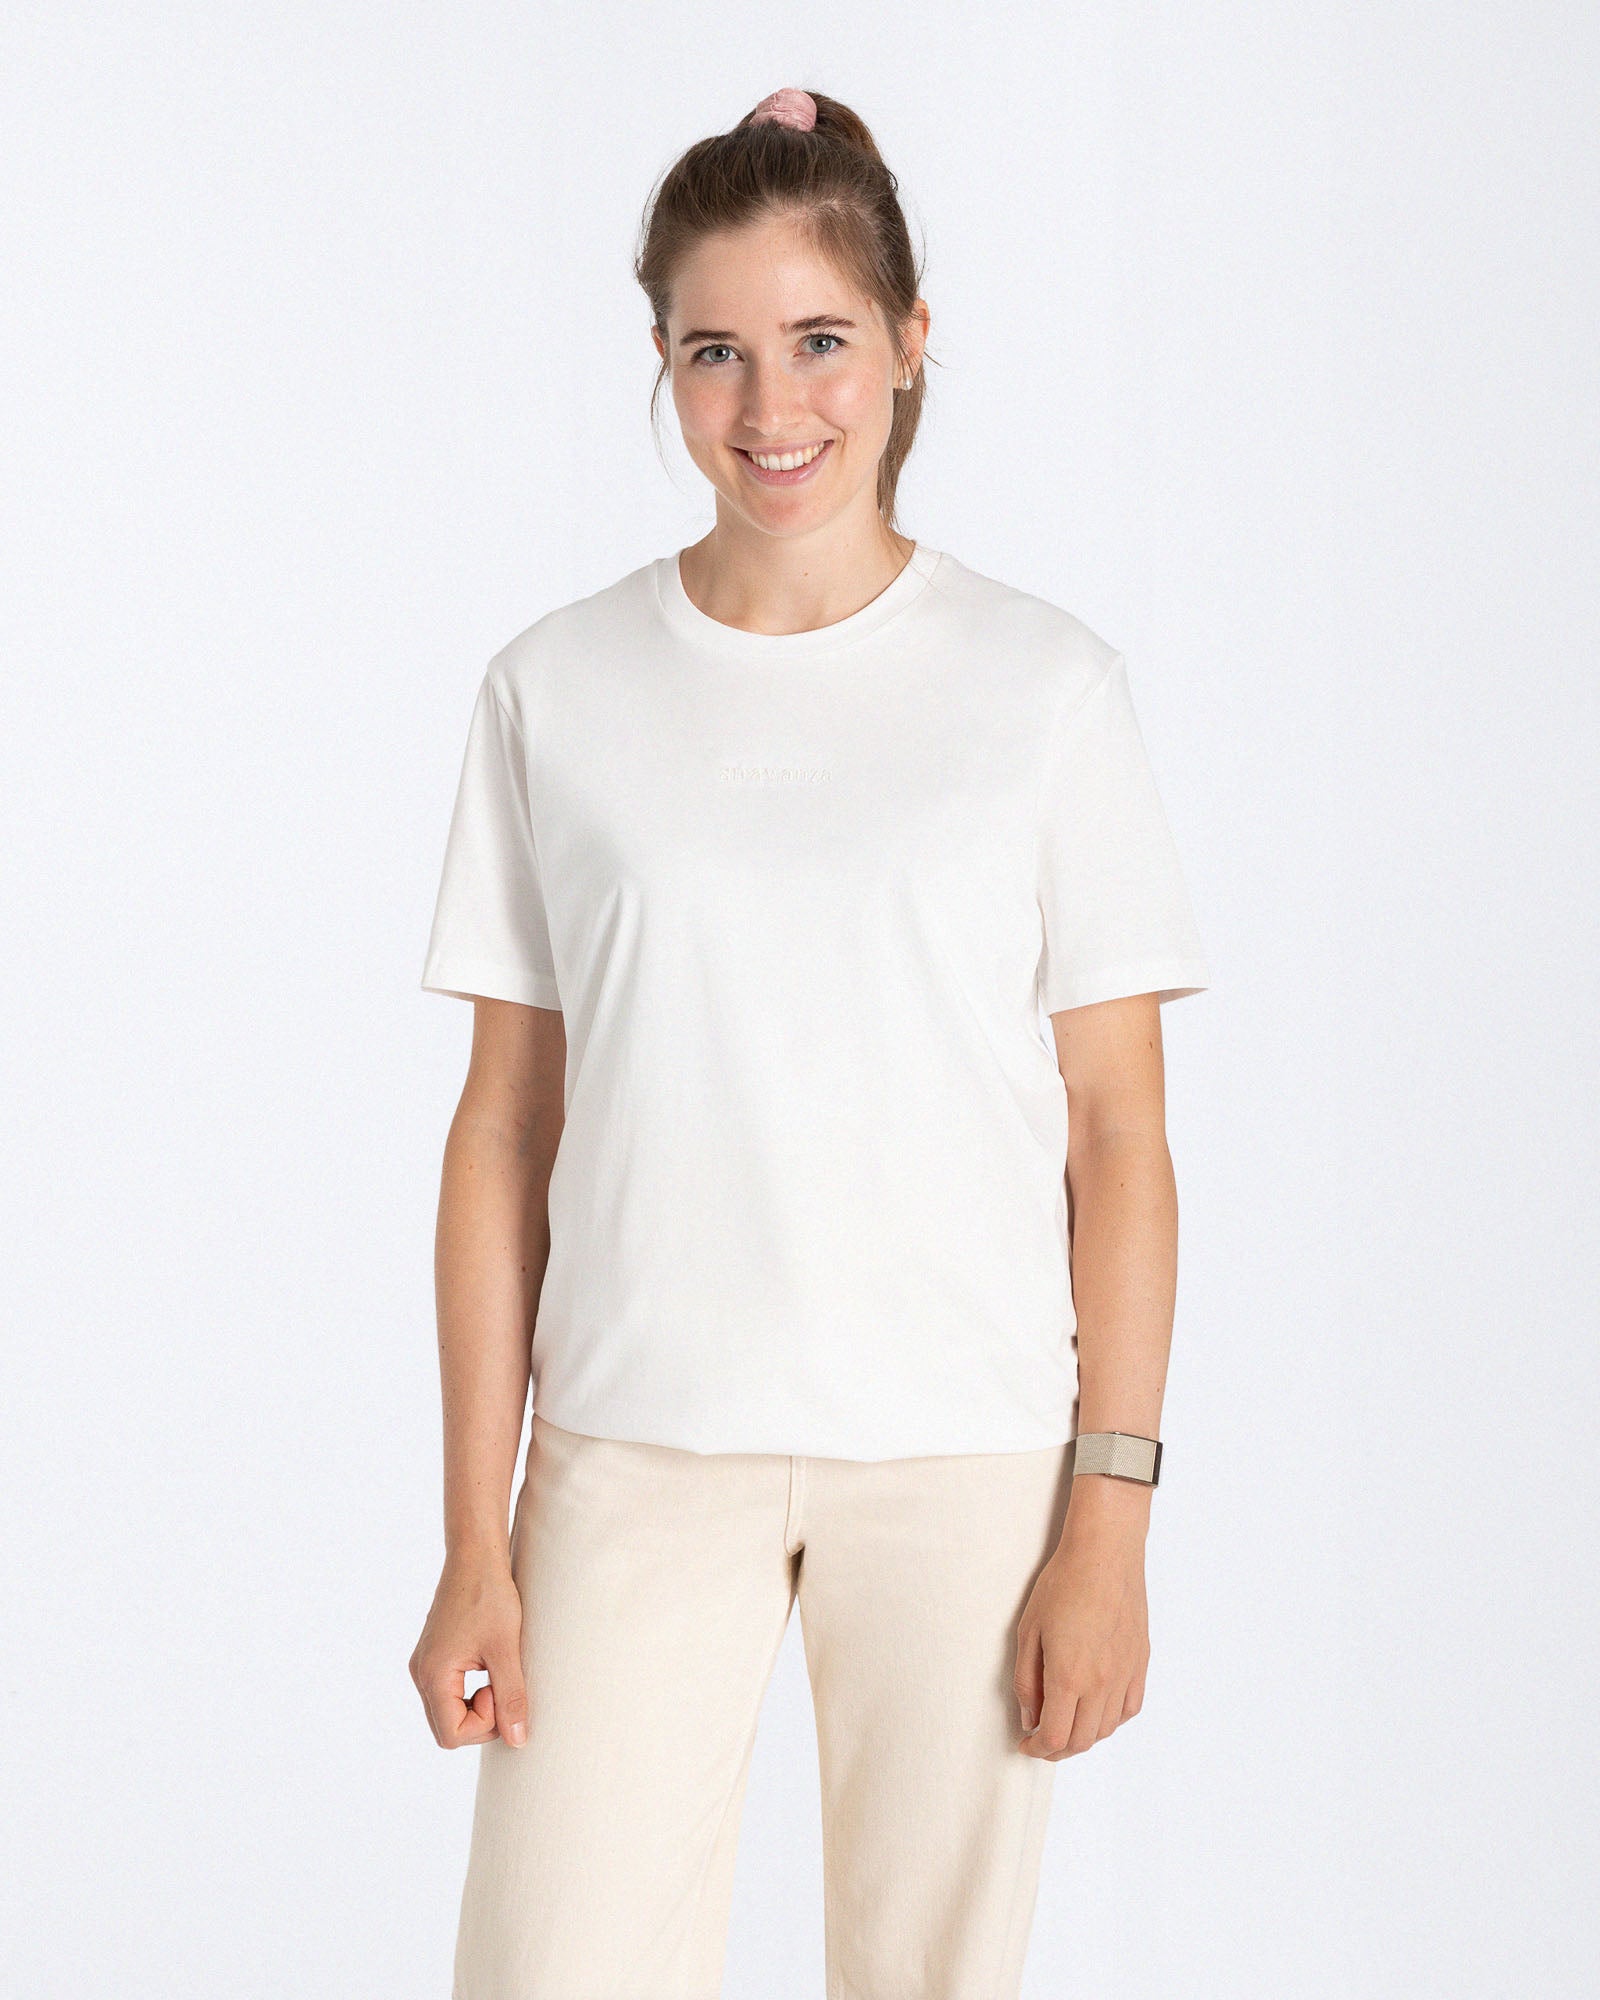 Ein weibliches Model trägt ein weißes T-Shirt mit einem Ton in Ton 